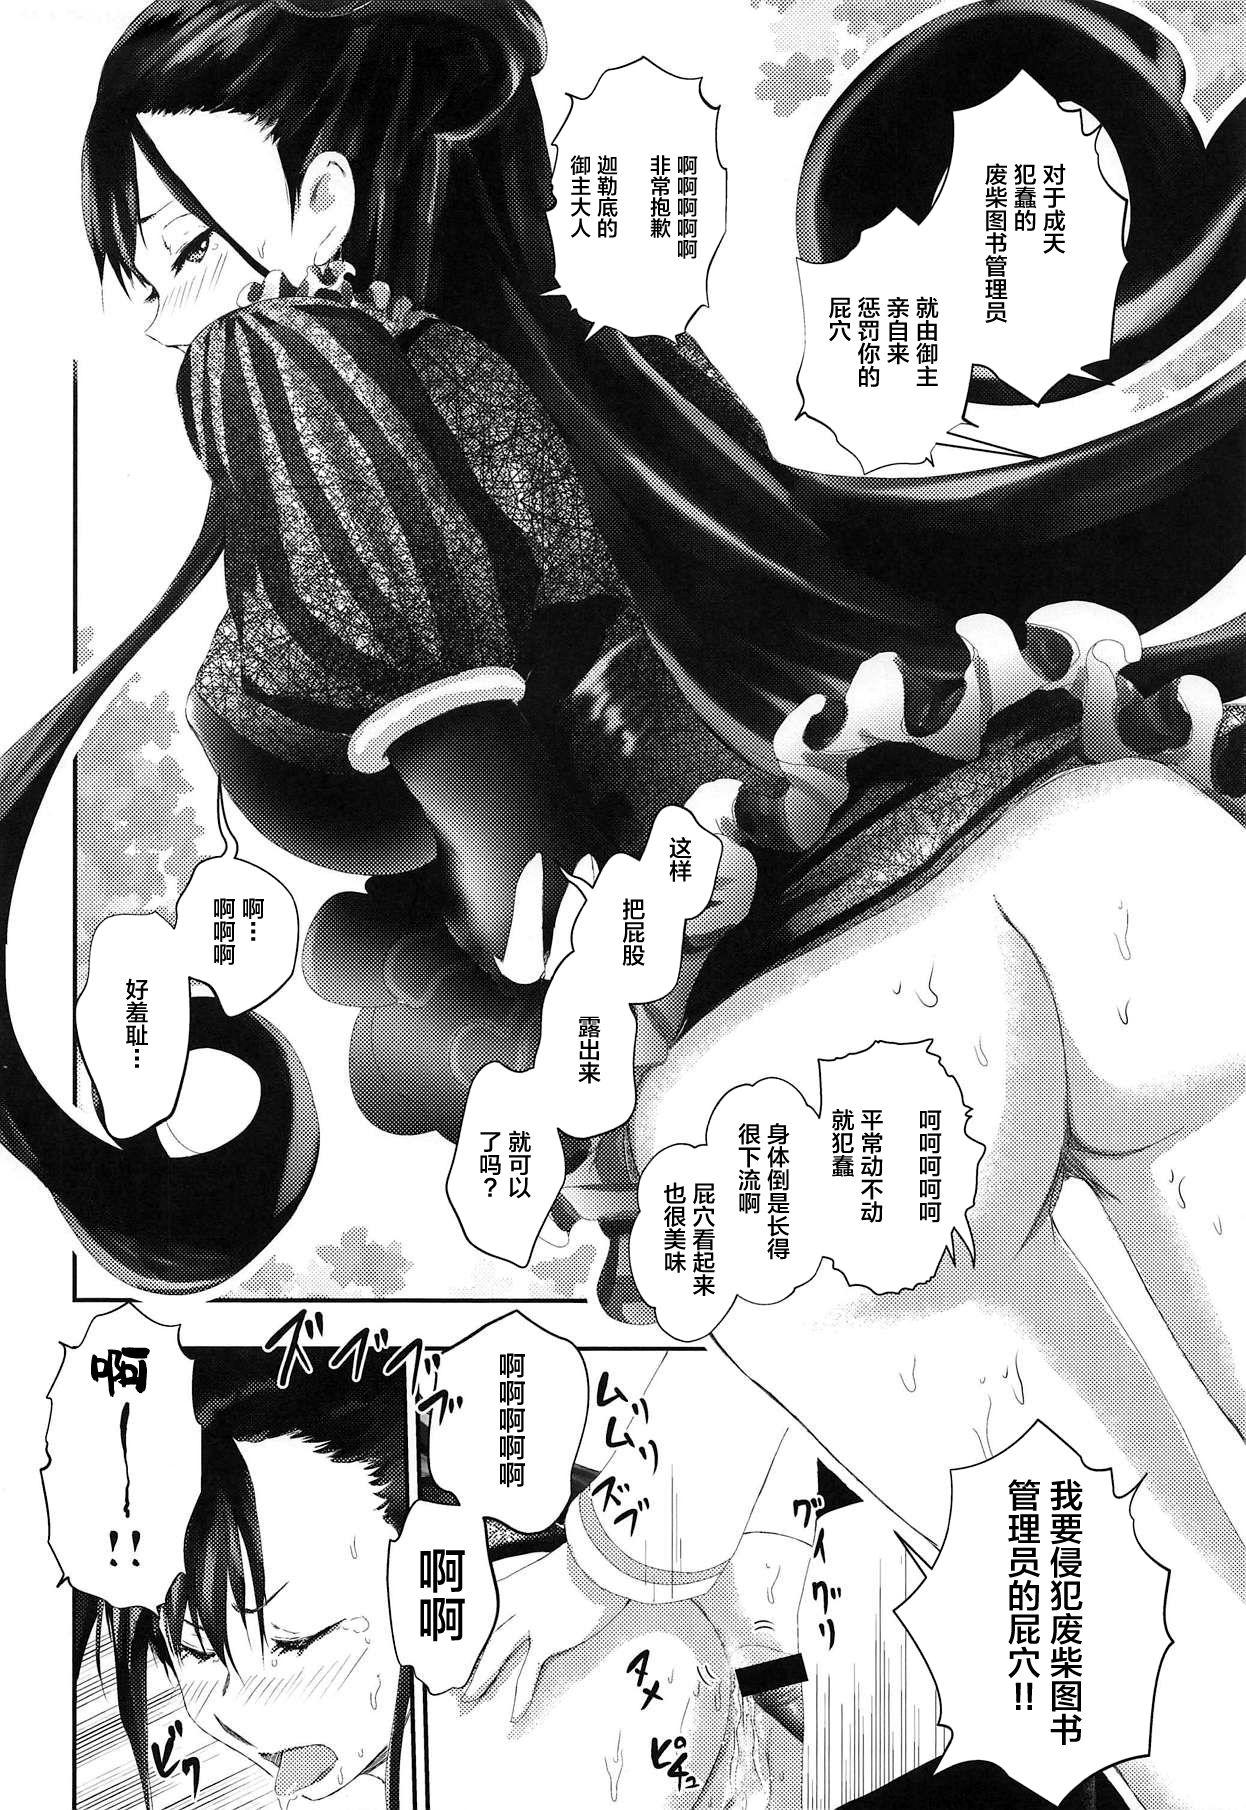 Rubdown Hougu Lv.2 no Murasaki Shikibu o Guchagucha ni Okasu Hon - Fate grand order Full - Page 3